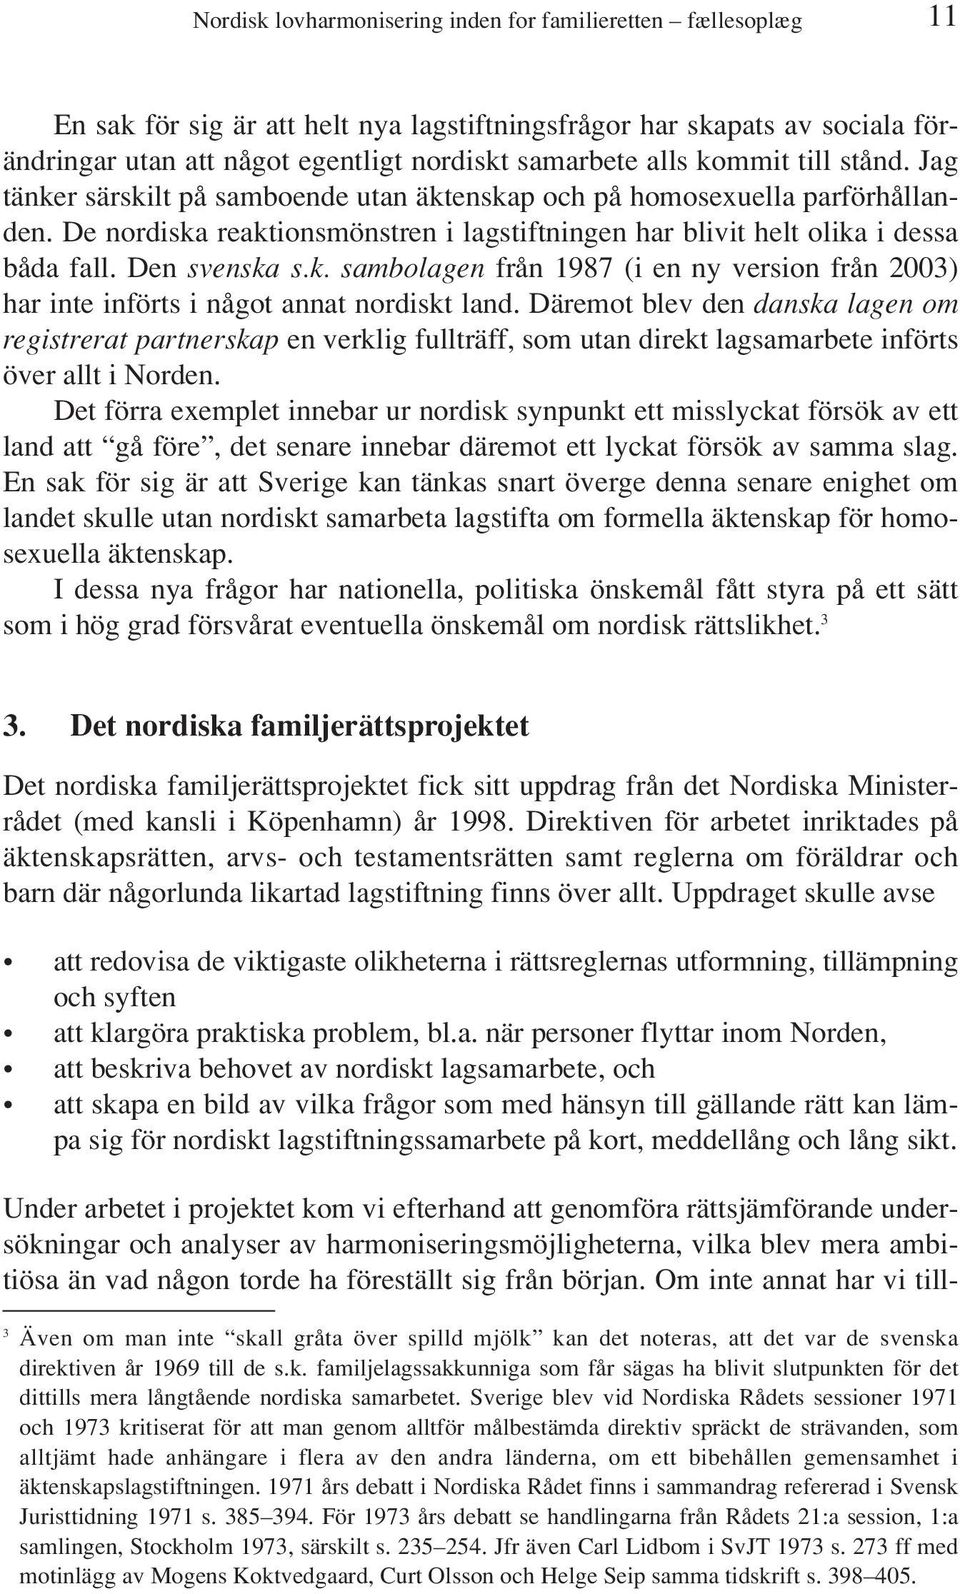 Den svenska s.k. sambolagen från 1987 (i en ny version från 2003) har inte införts i något annat nordiskt land.